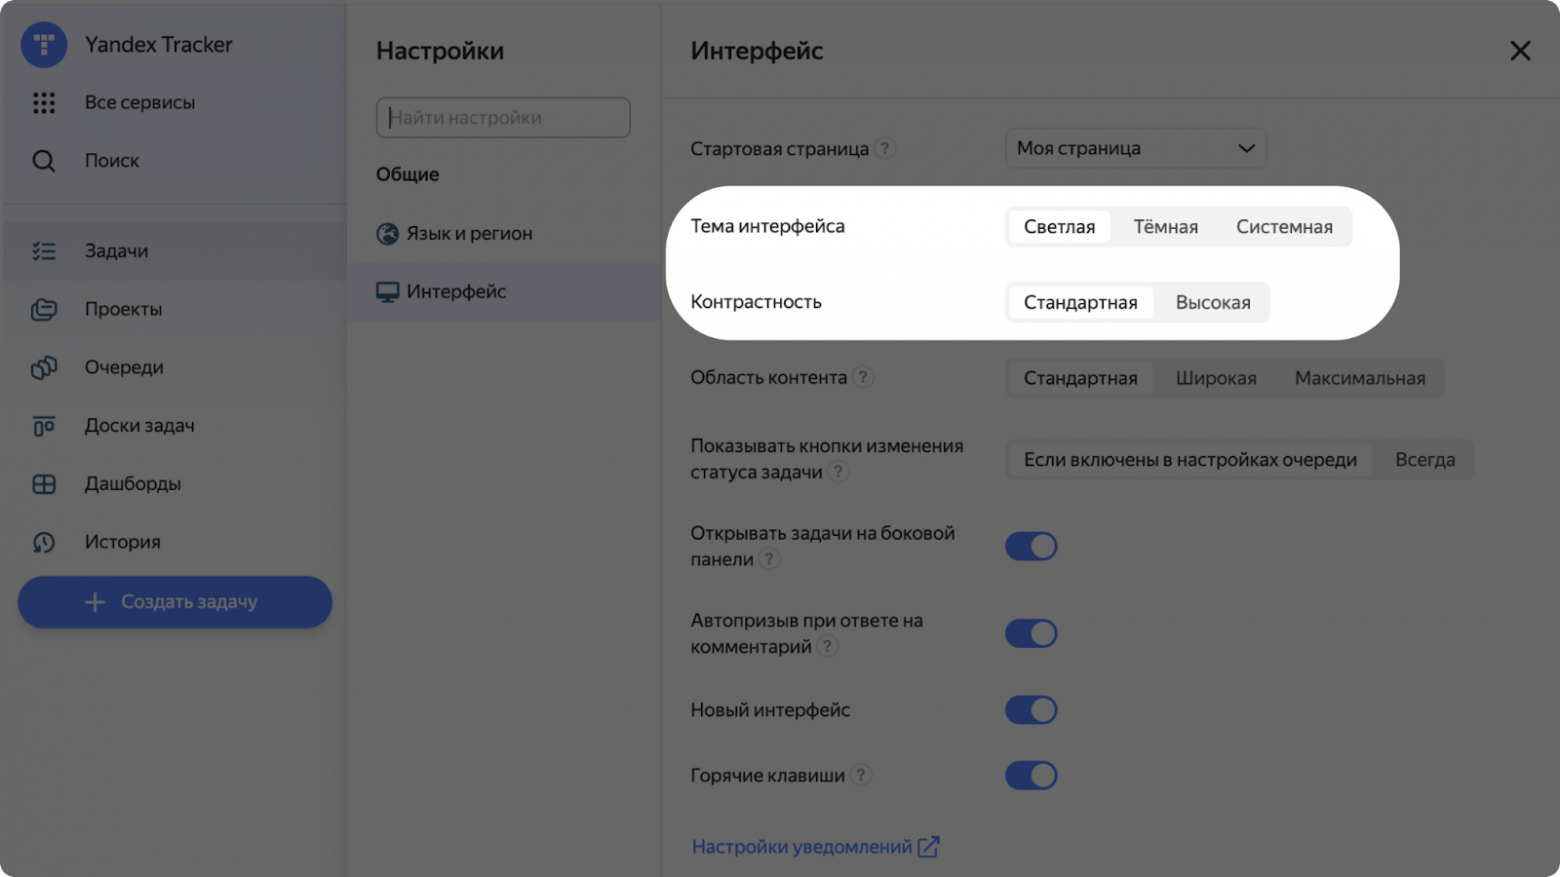 Пример интерфейса Yandex Tracker, сделанный также на компонентах Gravity UI, с возможностью включения повышенной контрастности 